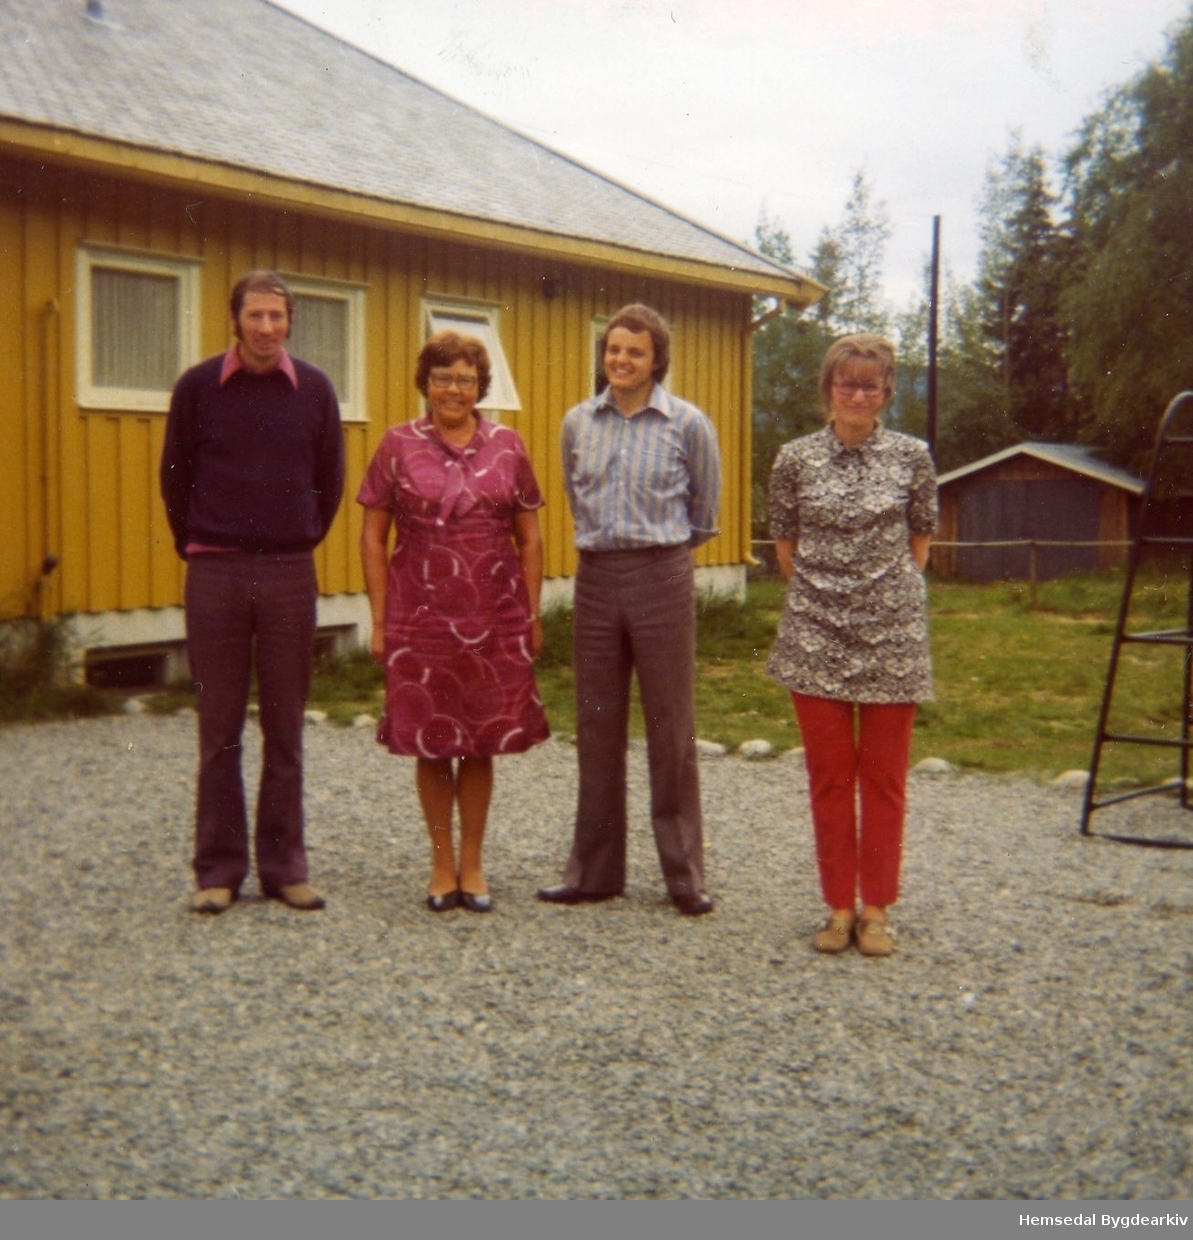 Lærarstaben ved Ulsåk skule i Hemsedal 1973-74:
Frå venstre: rektor Svein Gjørv, Kirksten Mythe, Arne Engebakken og Berit Marie Sørhøy, fødd Flaten.